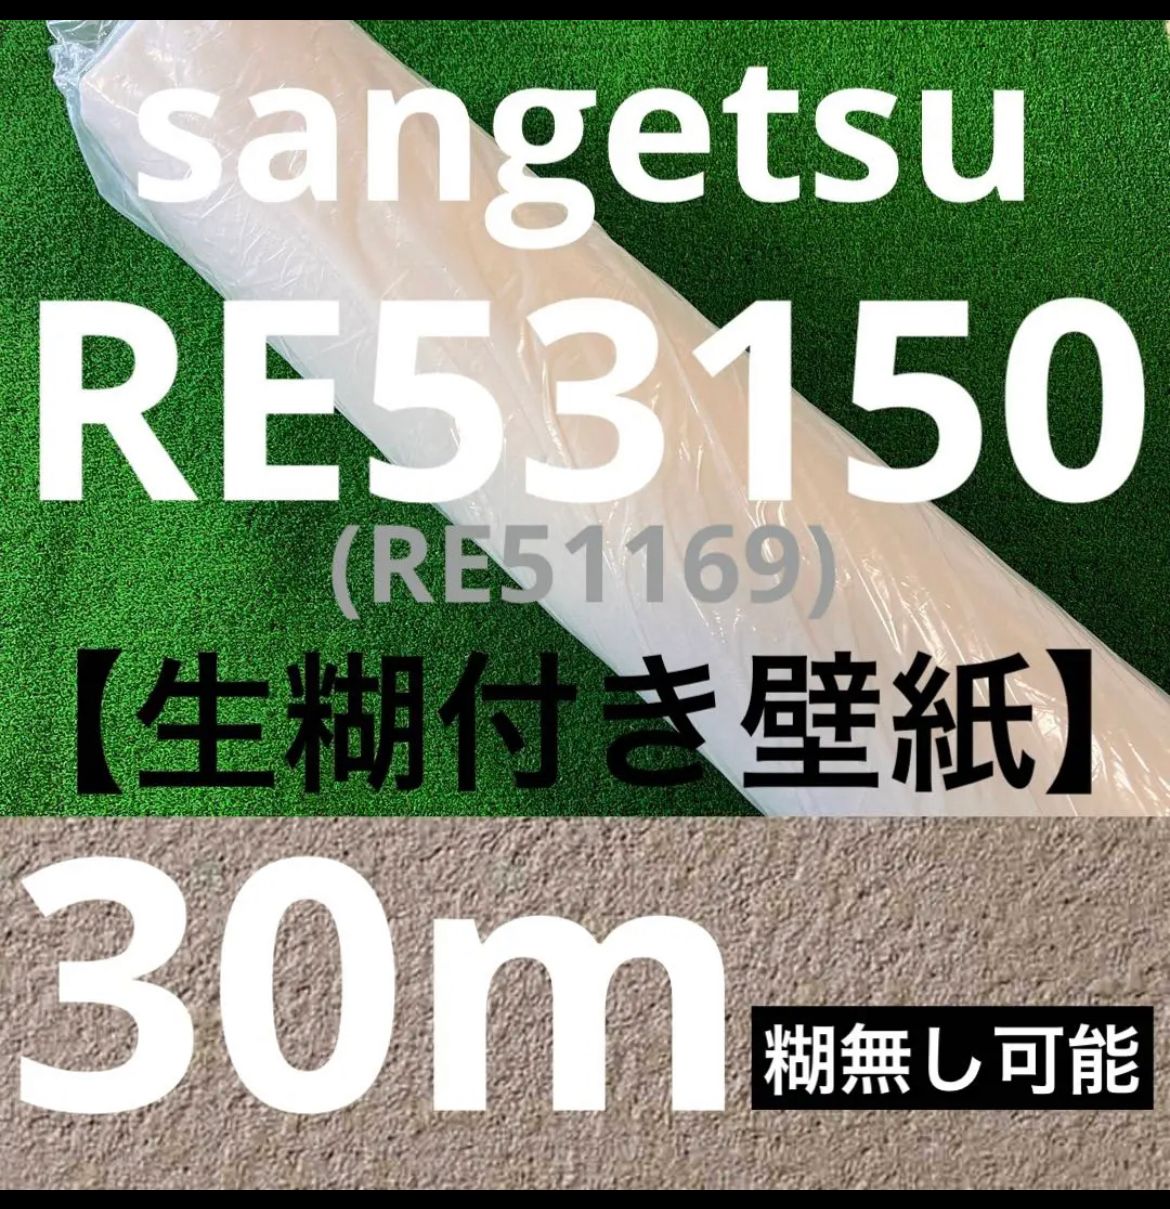 サンゲツsangetsu壁紙クロスRE53150/30m - メルカリ